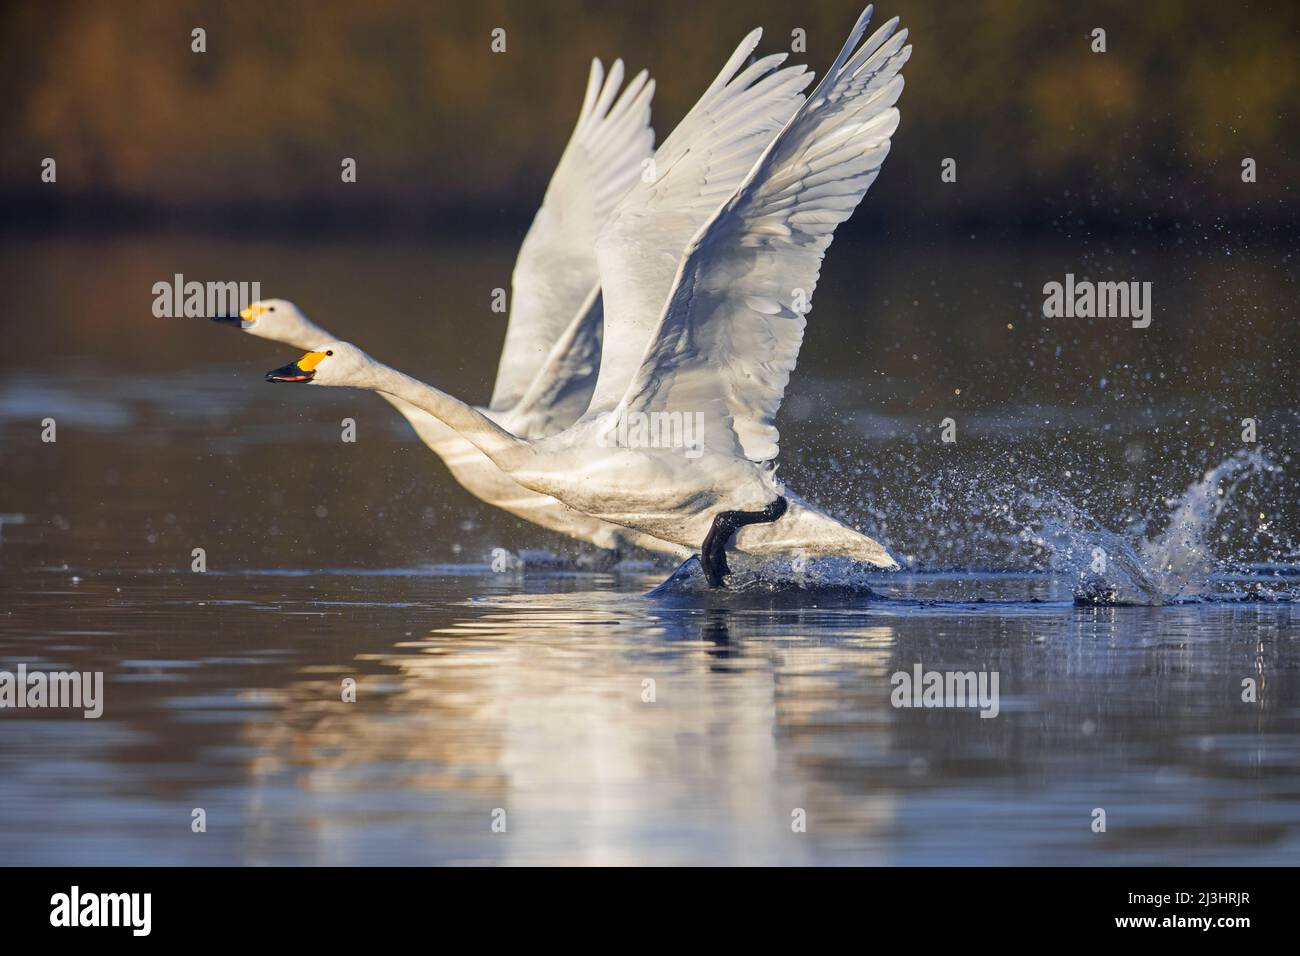 Dos cisnes de tundra / cisnes de Bewick (Cygnus bewickii / Cygnus columbianus bewickii) despegar del agua en el lago en invierno Foto de stock